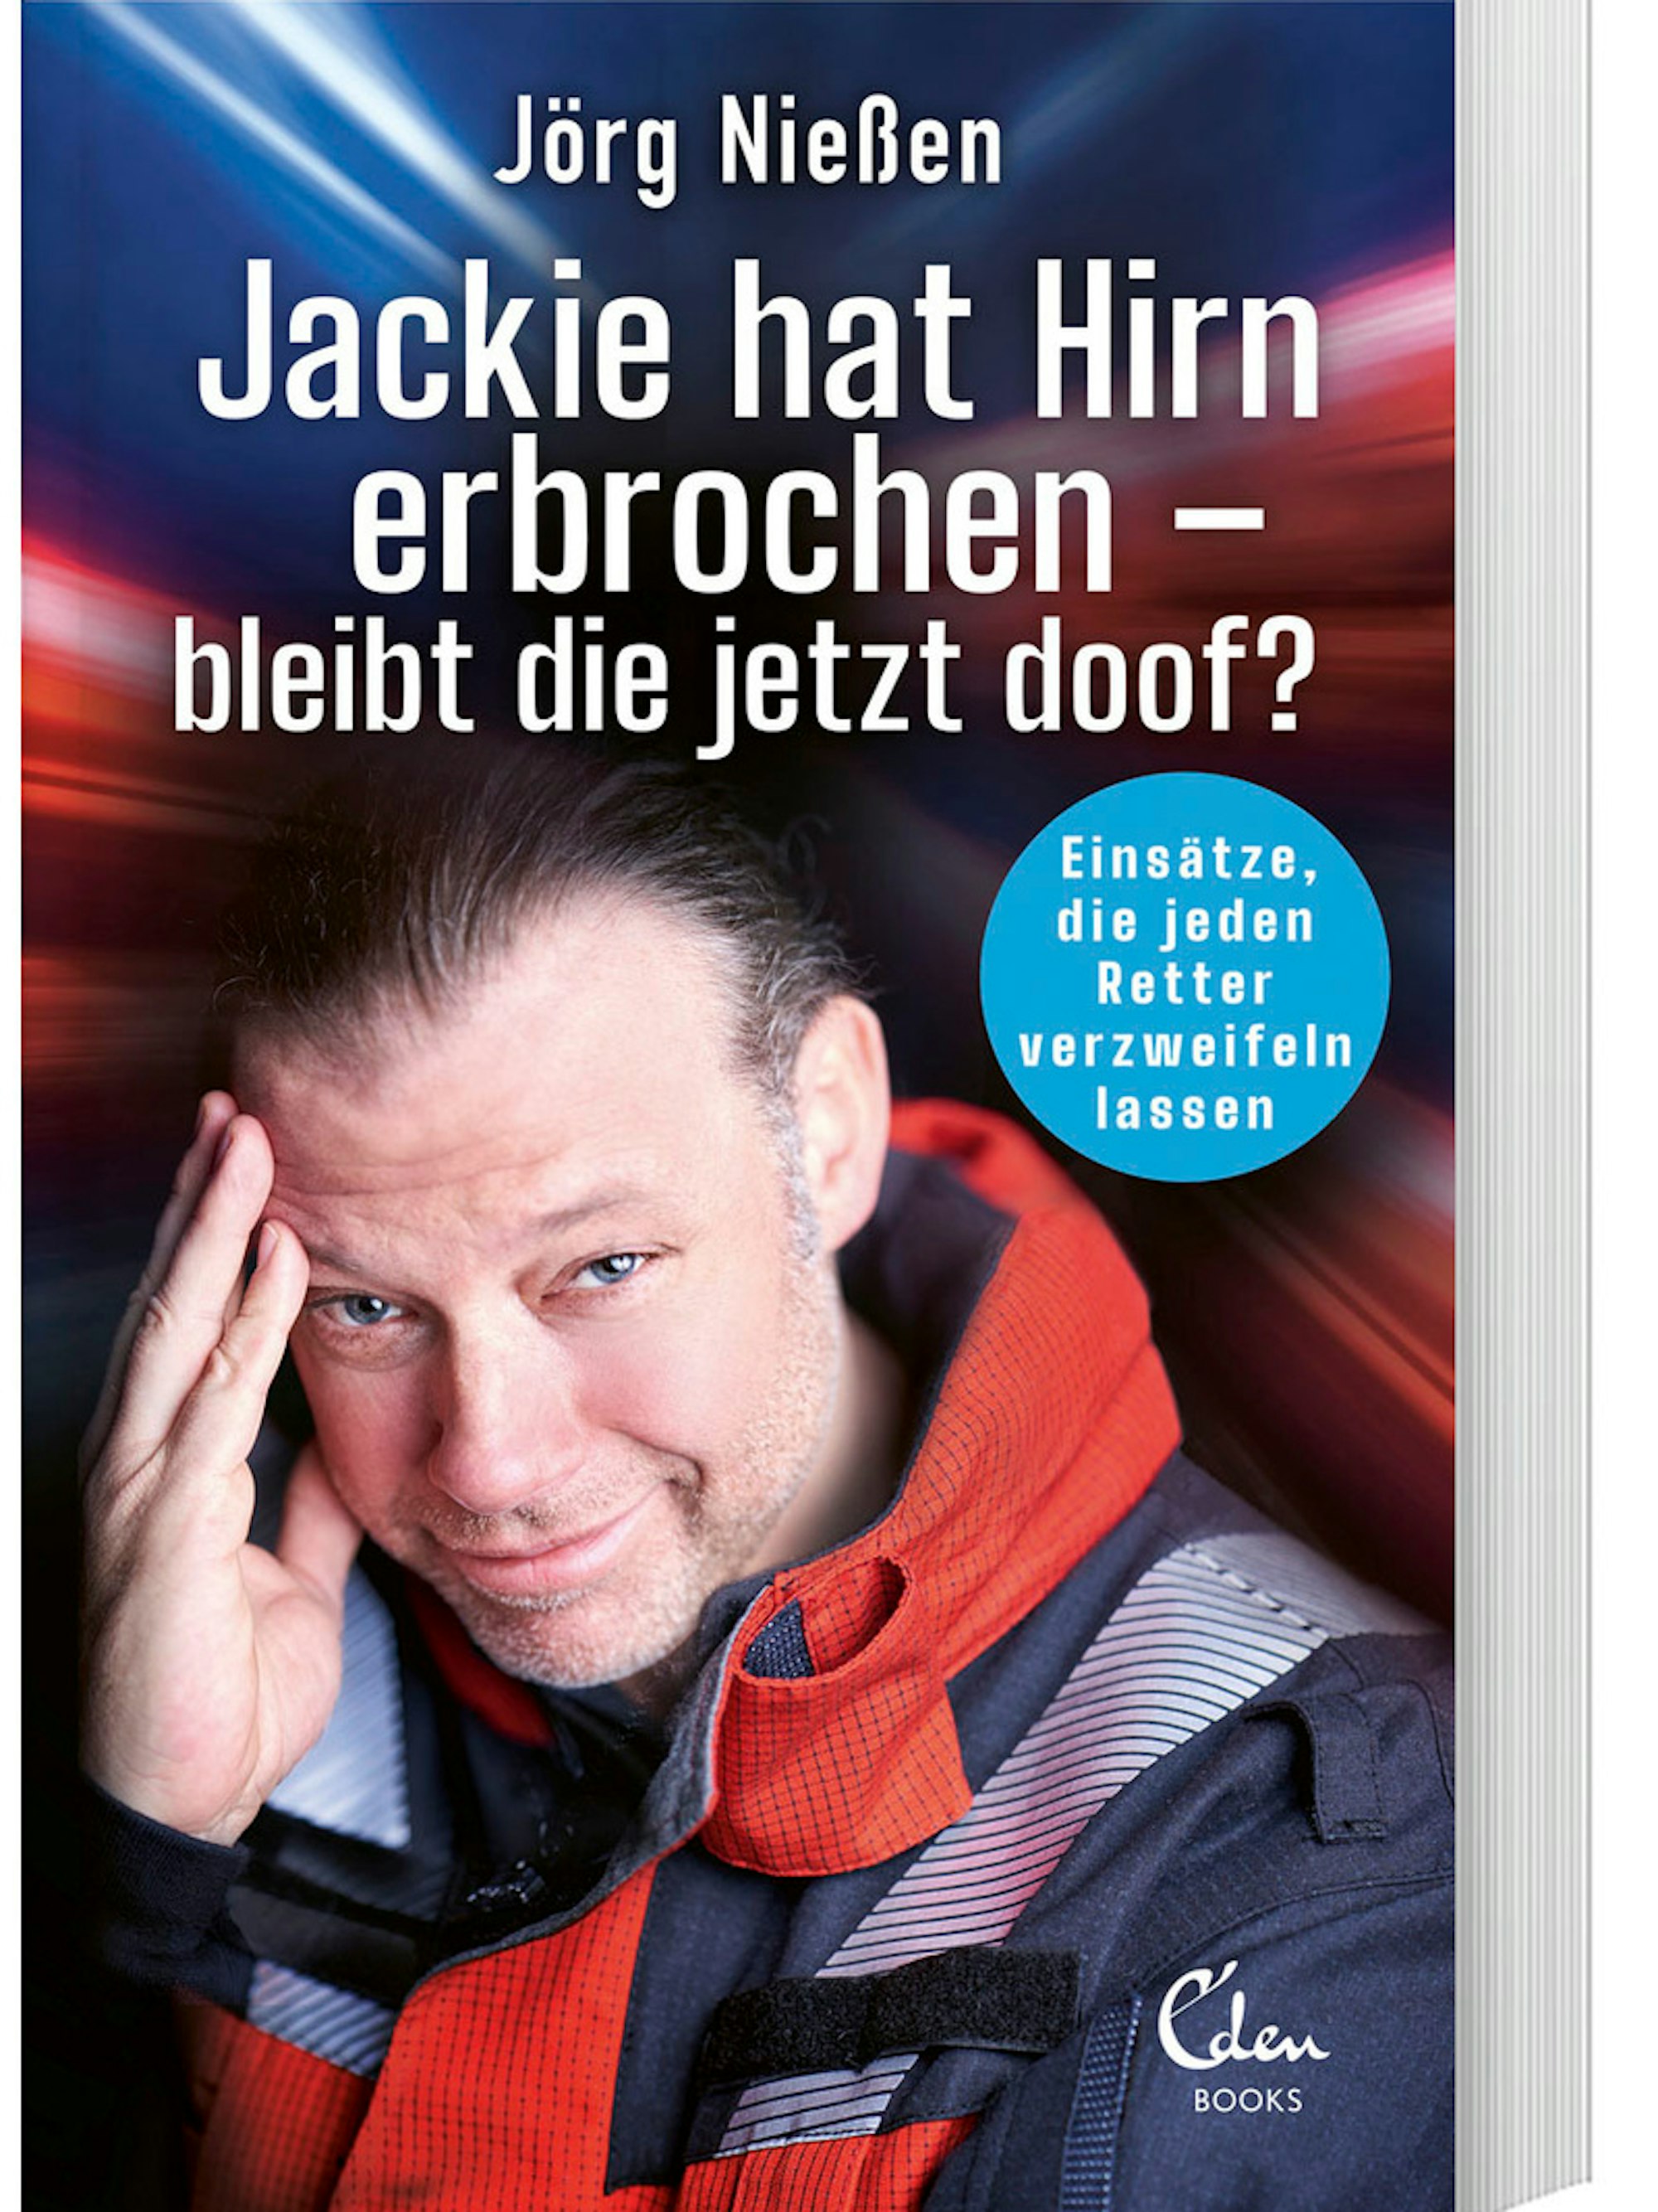 Jörg Nießen auf dem Titelblatt seines Buches.